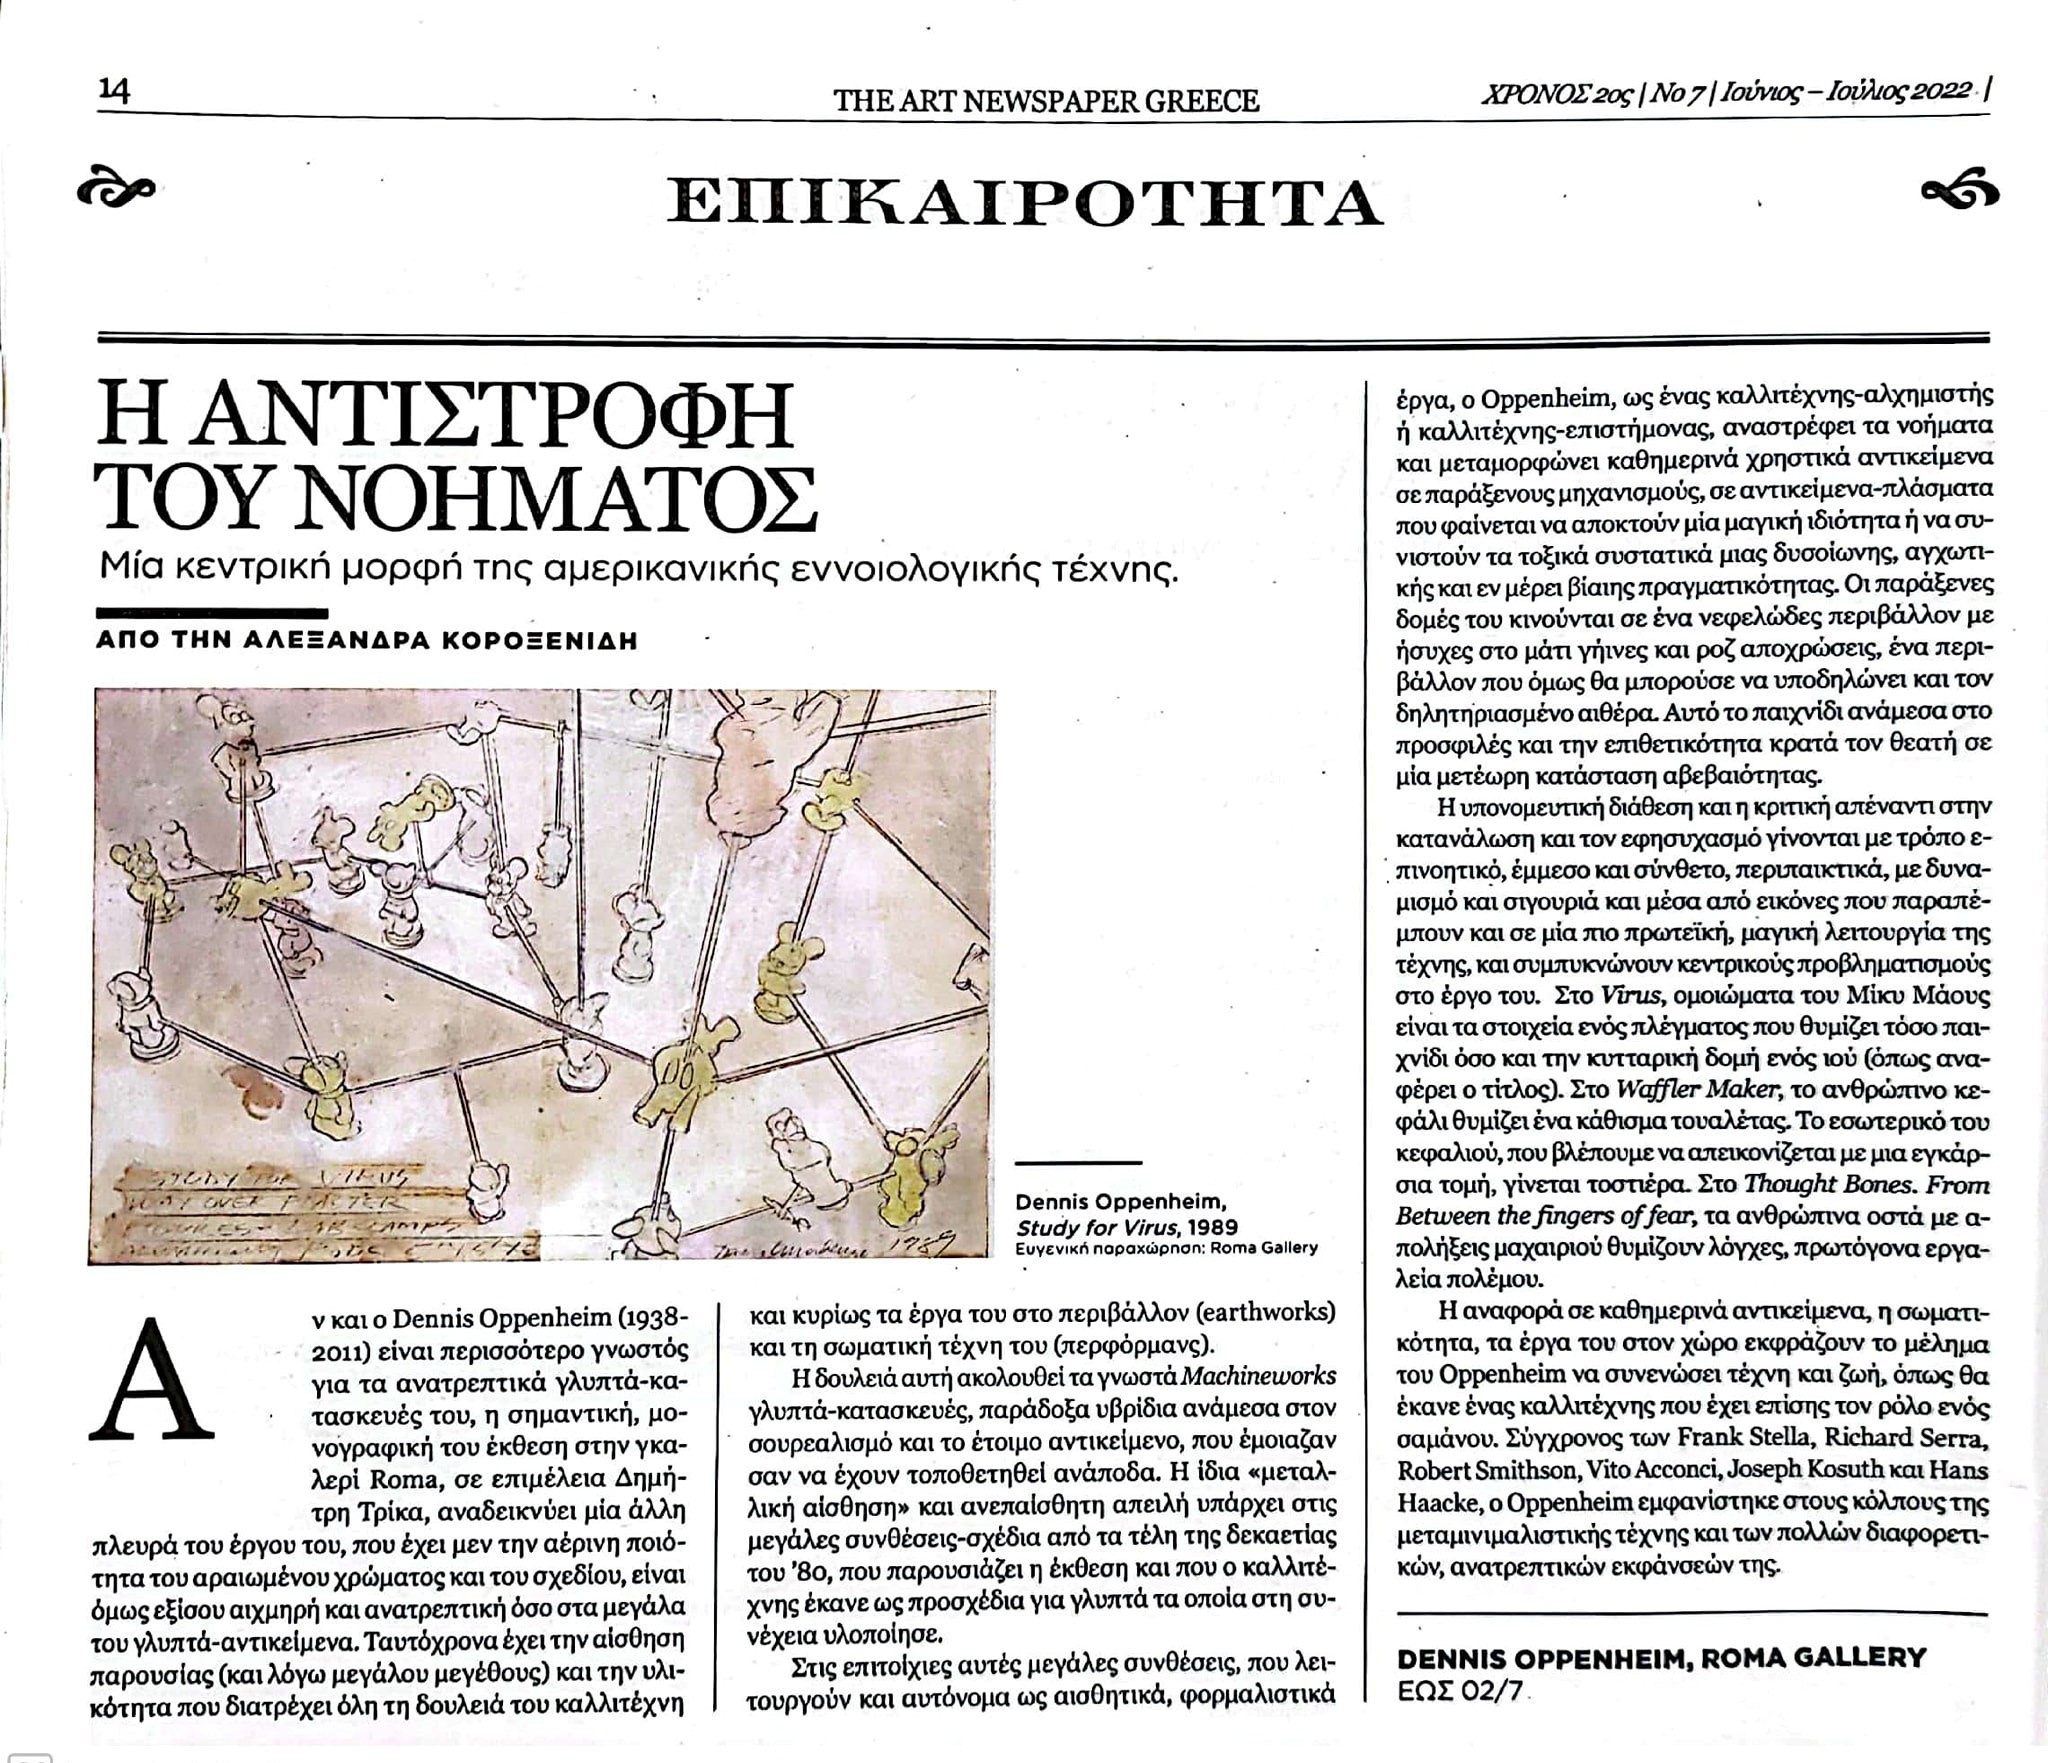 THE ART NEWSPAPER GREECE